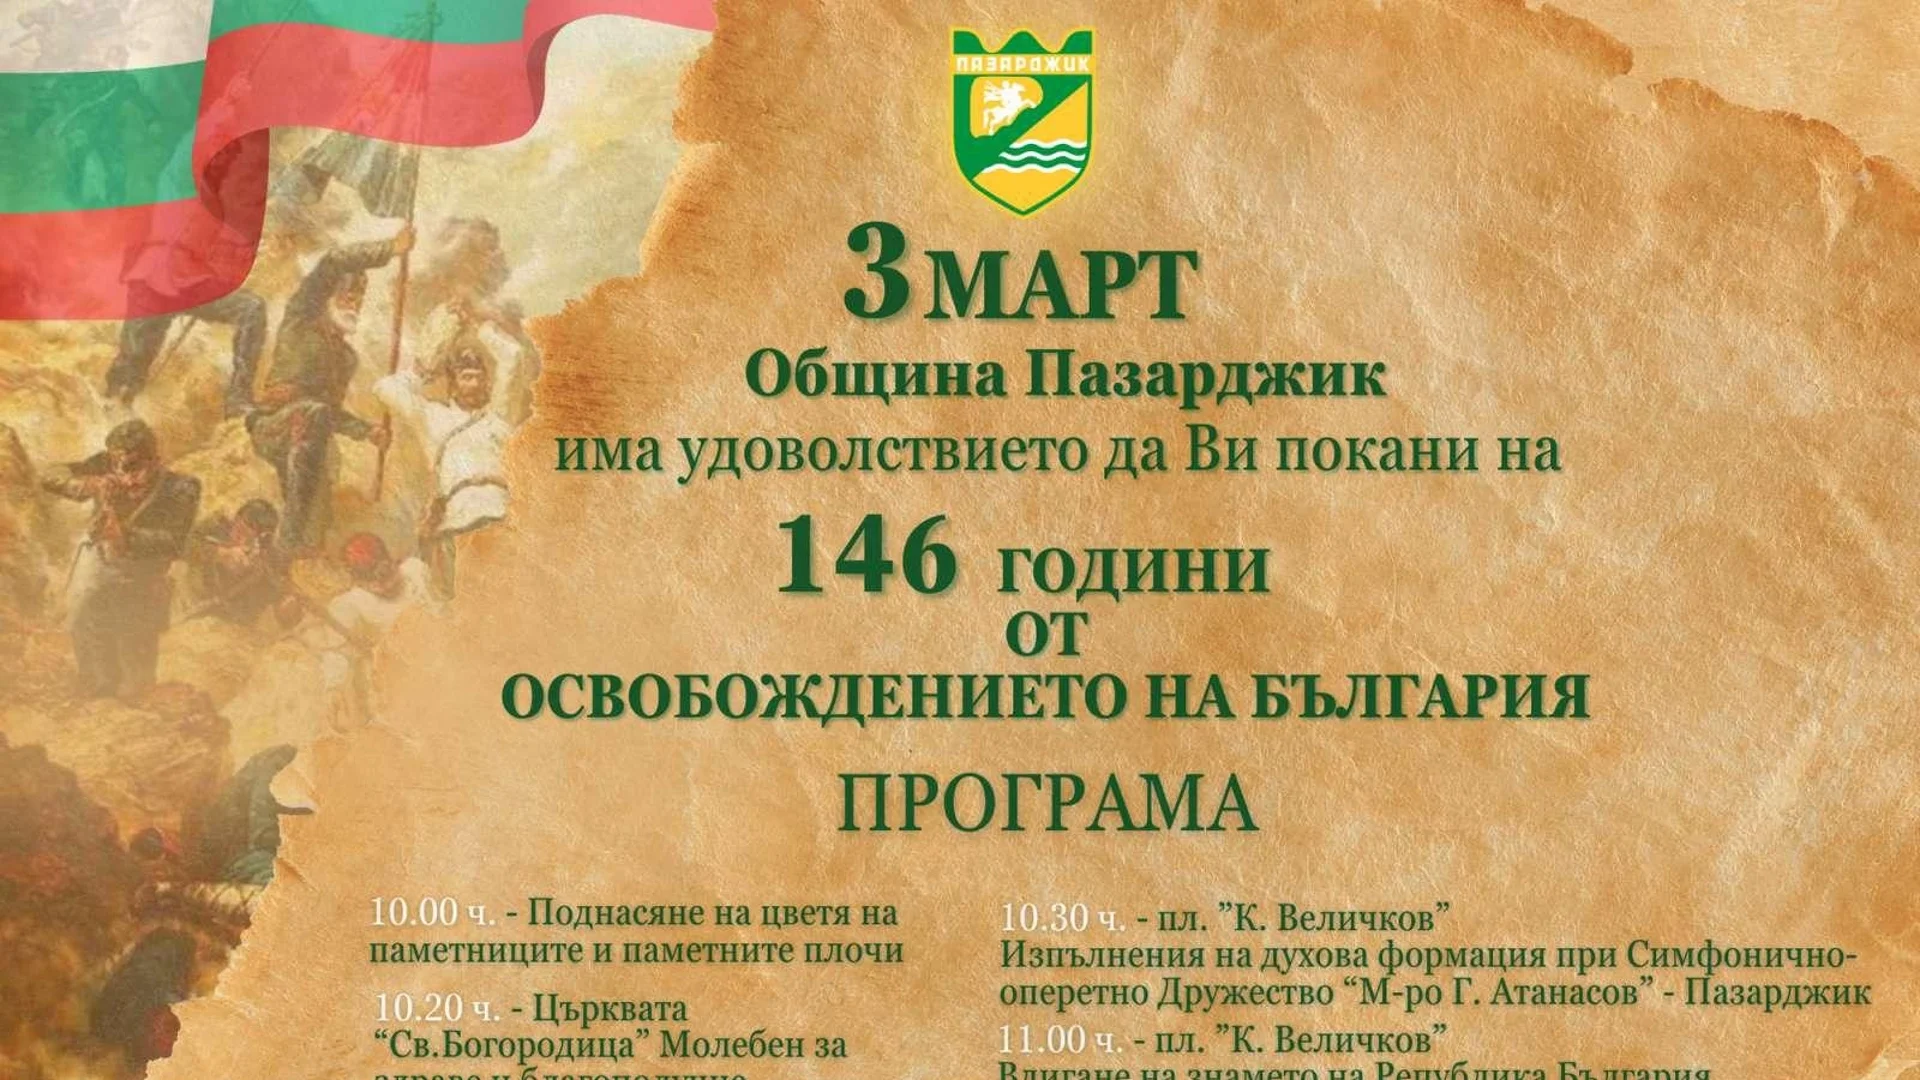 Община Пазарджик с тържествена програма по случай националния празник 3 март